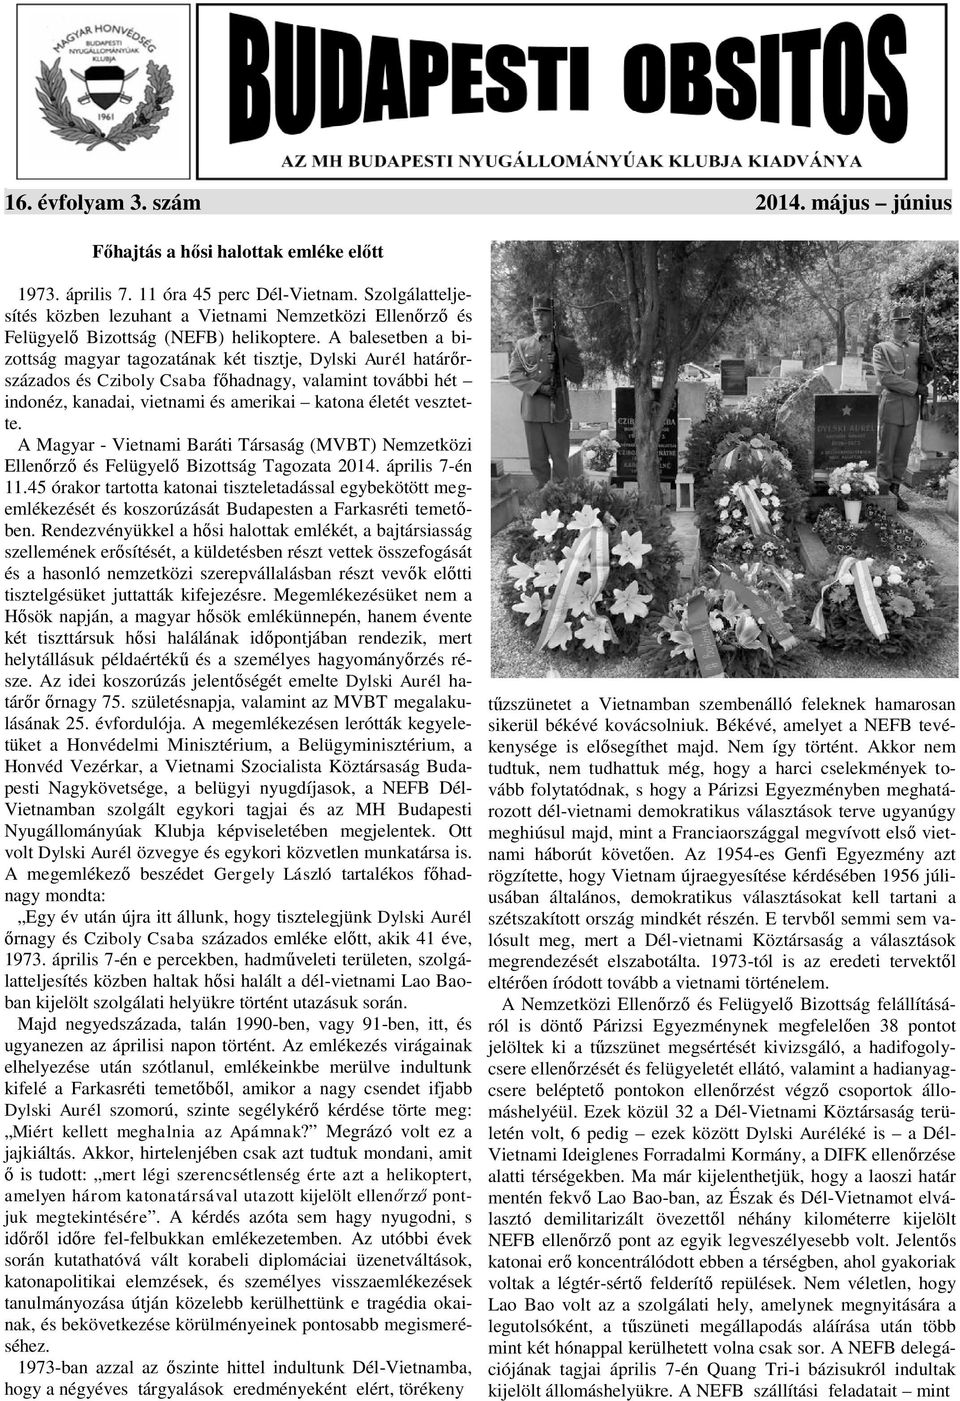 A balesetben a bizottság magyar tagozatának két tisztje, Dylski Aurél határőrszázados és Cziboly Csaba főhadnagy, valamint további hét indonéz, kanadai, vietnami és amerikai katona életét vesztette.